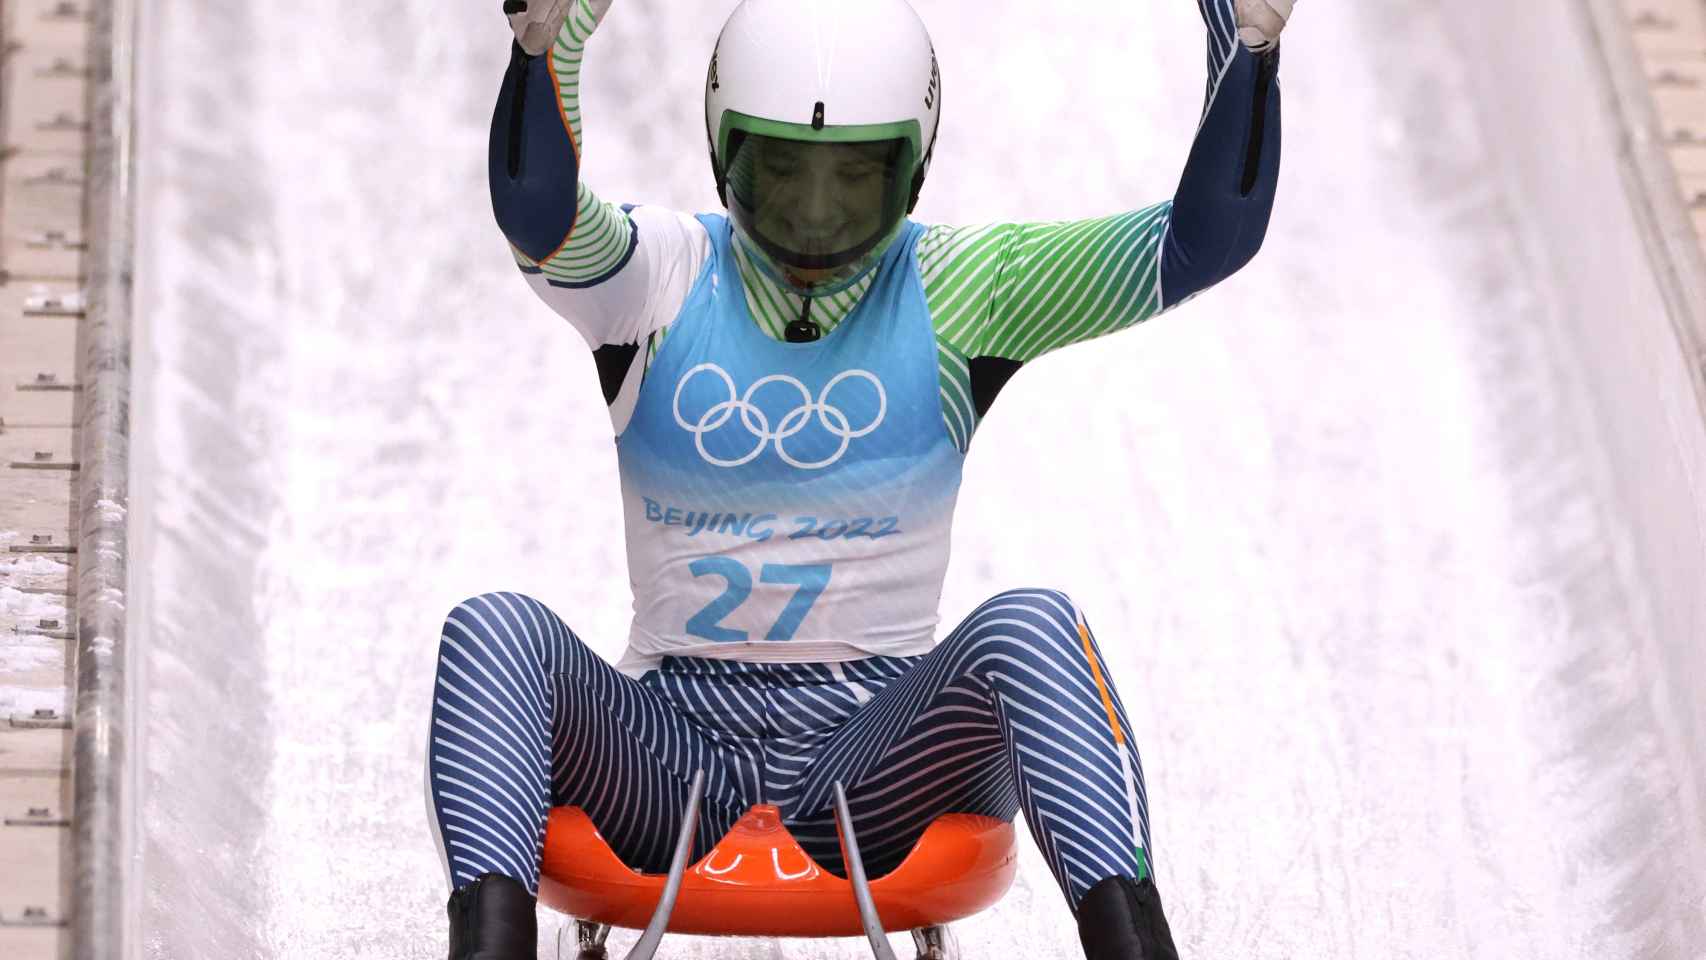 Elsa Desmond, durante los Juegos Olímpicos de Invierno 2022